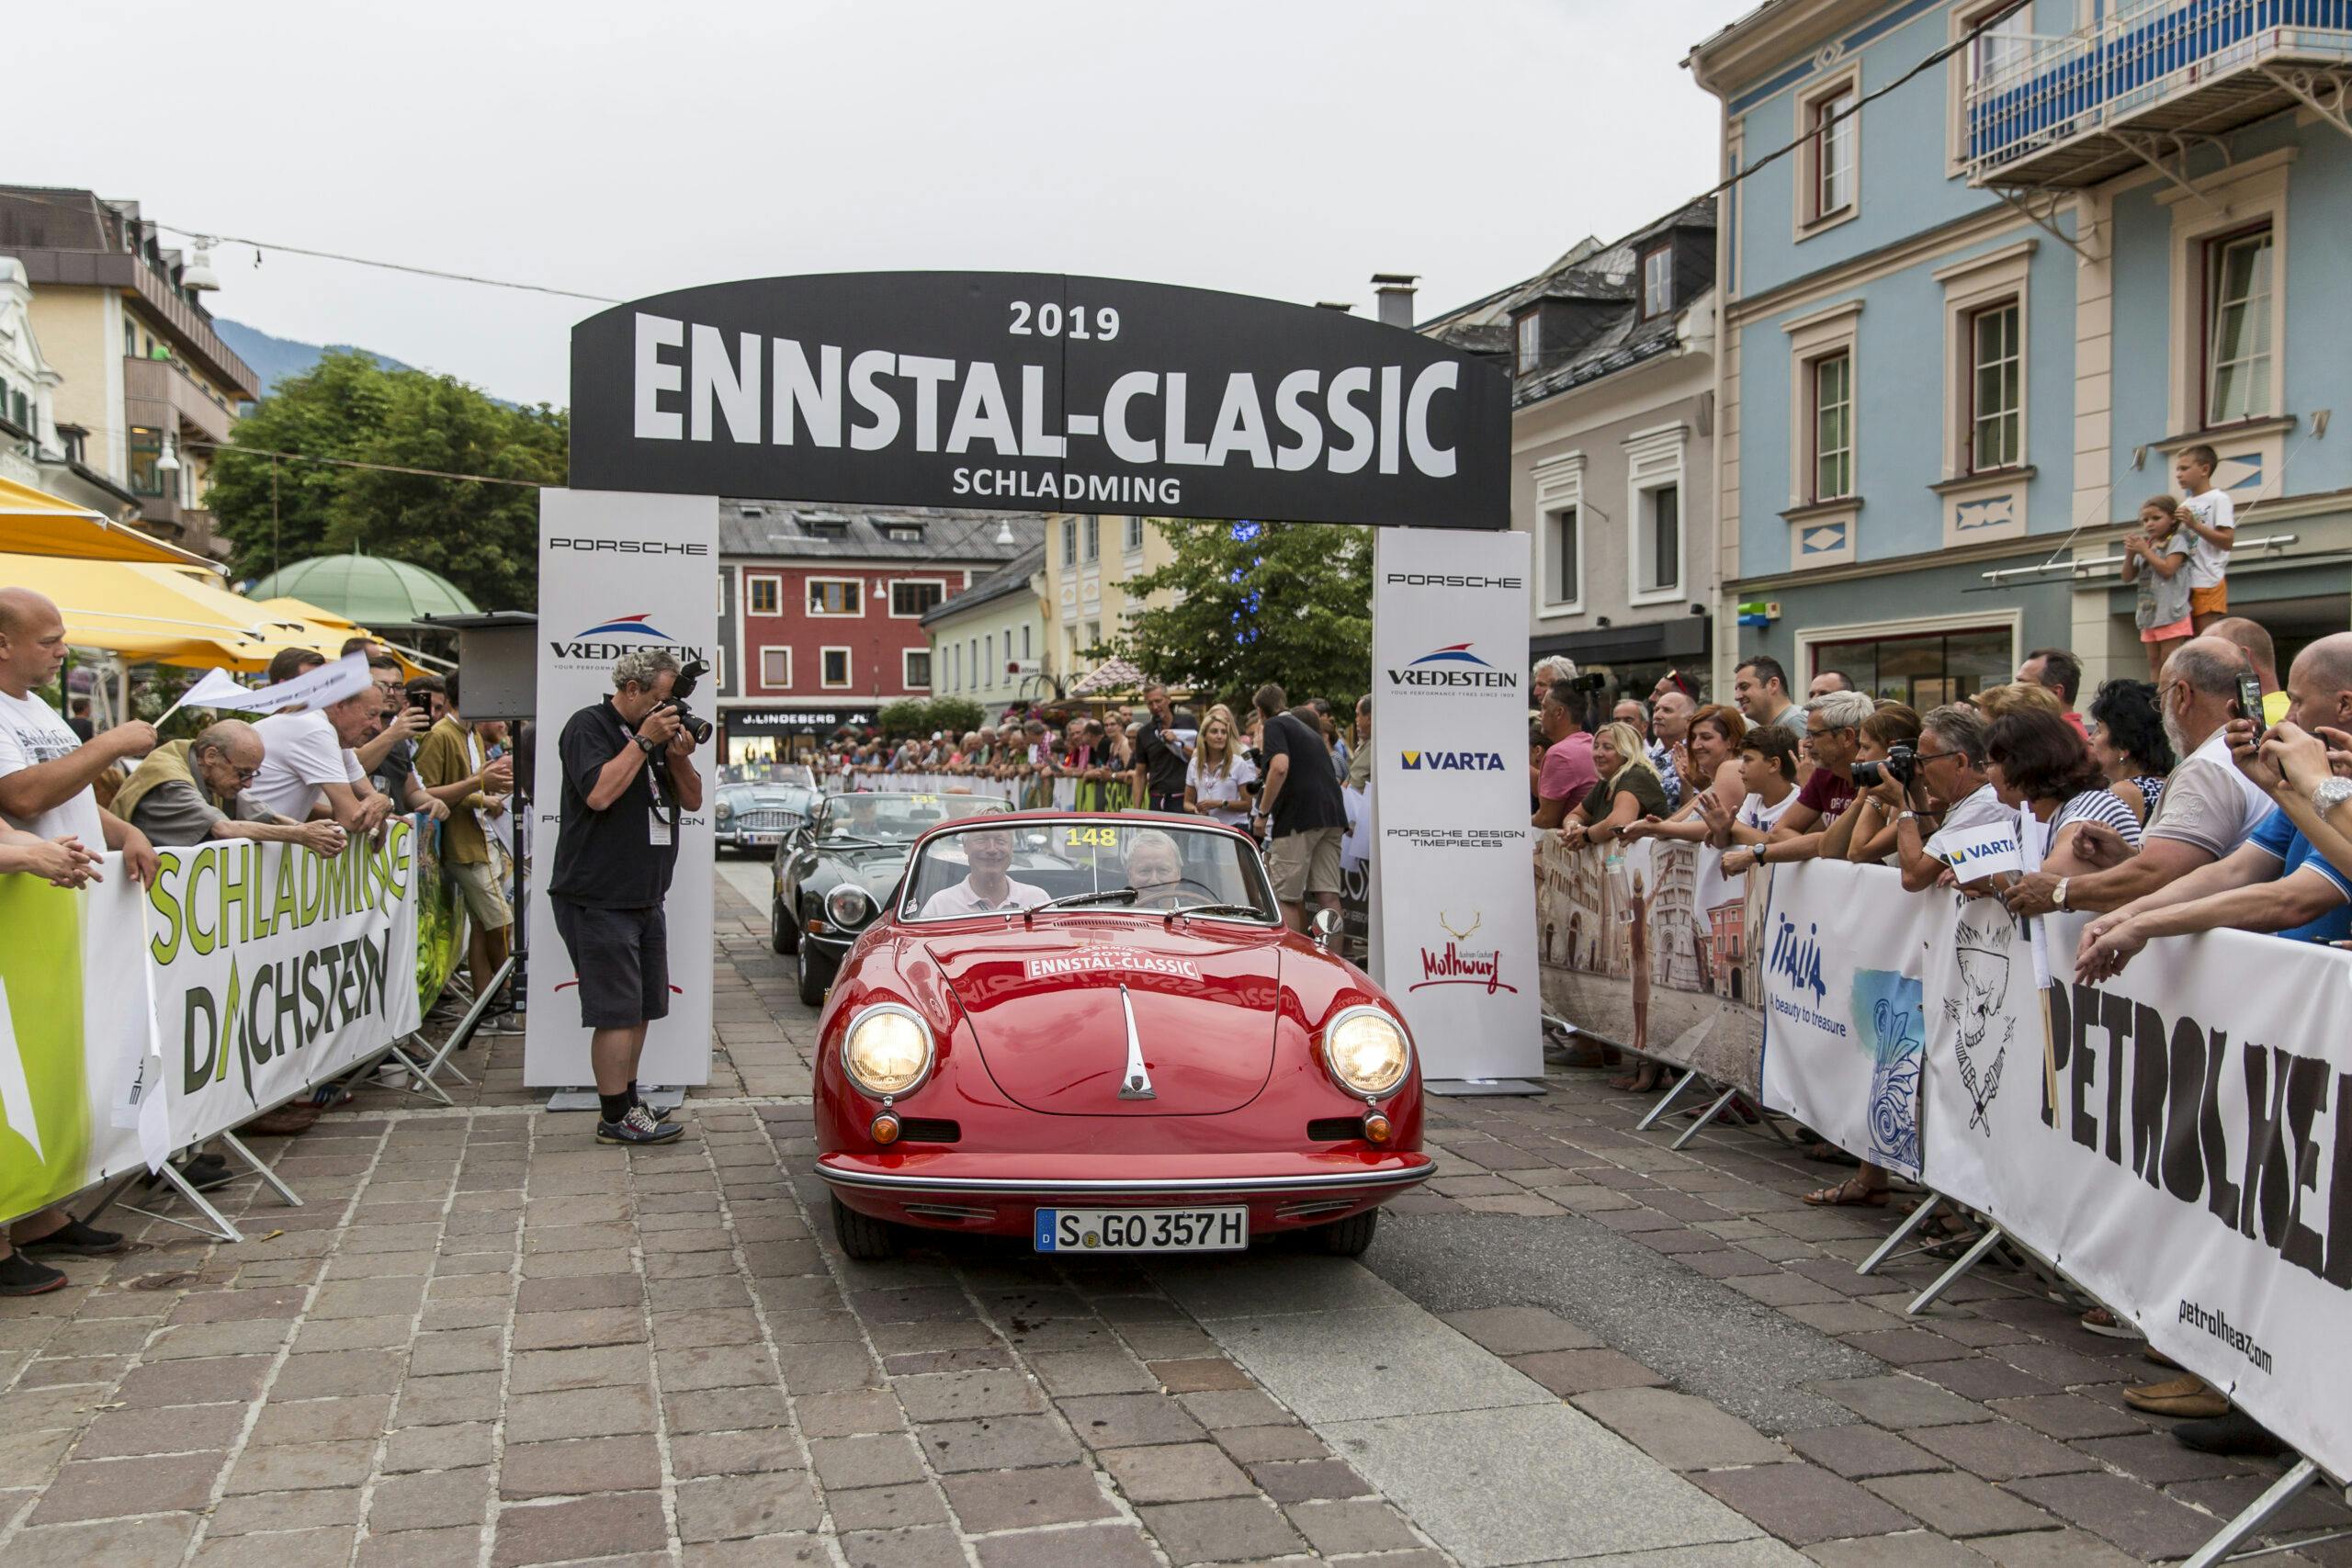 Porsche Design blickt auf eine spektakuläre Ennstal-Classic zurück